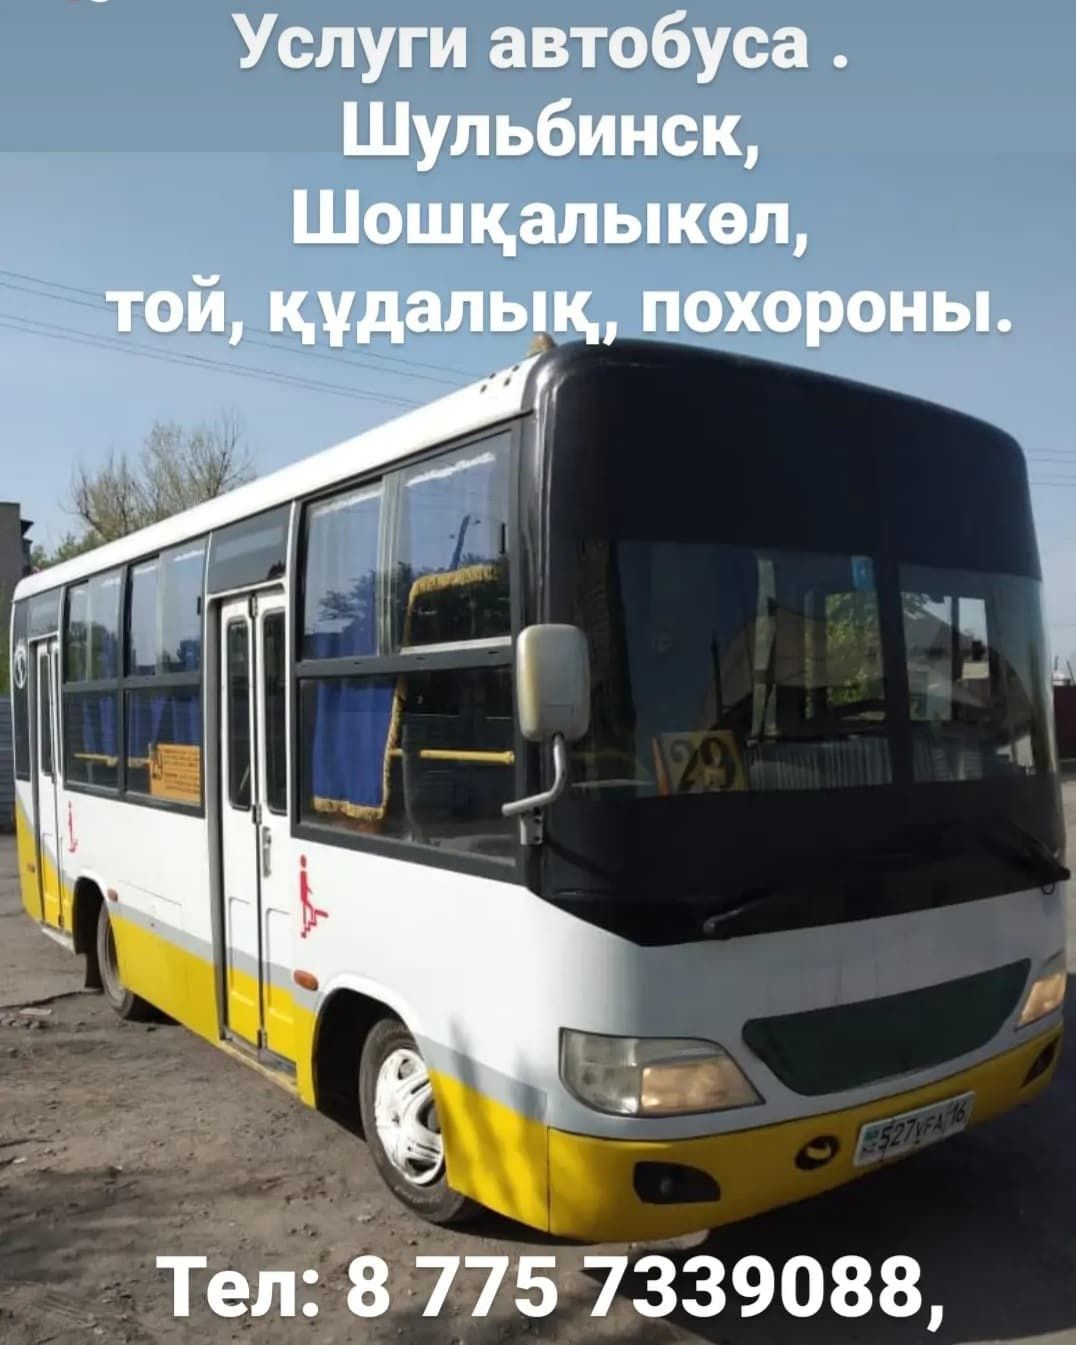 Автобусы Семей - продажа новых и БУ пассажирских автобусов на OLX.kz Семей